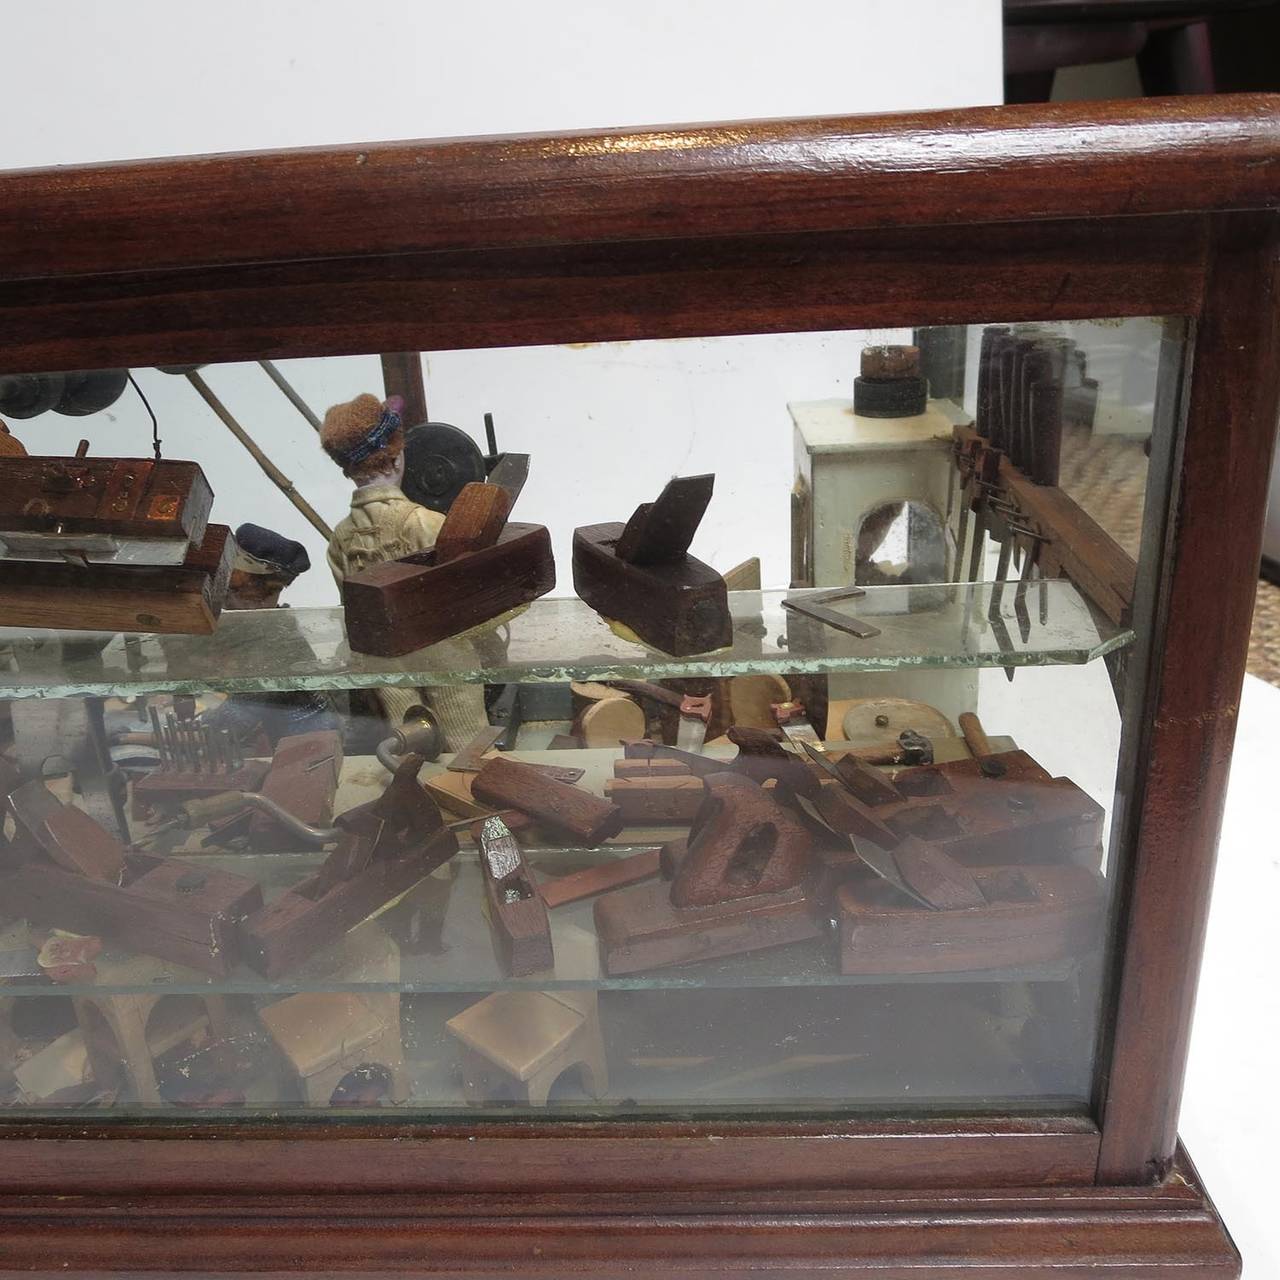 Folsom Prison Inmate Folk Art Wood Shop Diorama 1